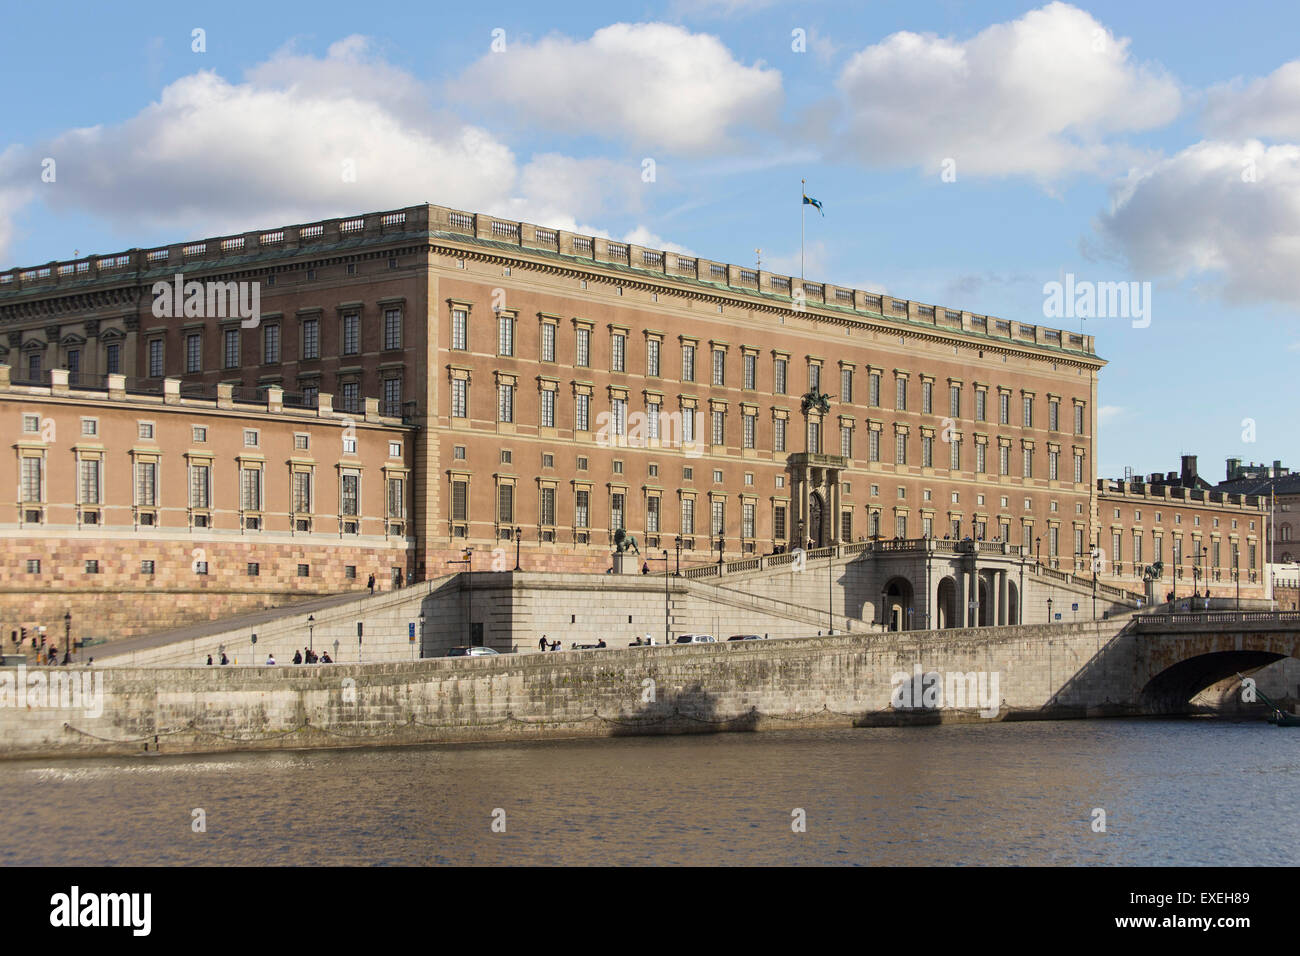 Royal Palace, Kungliga Slottet, Stockholm, Sweden Stock Photo